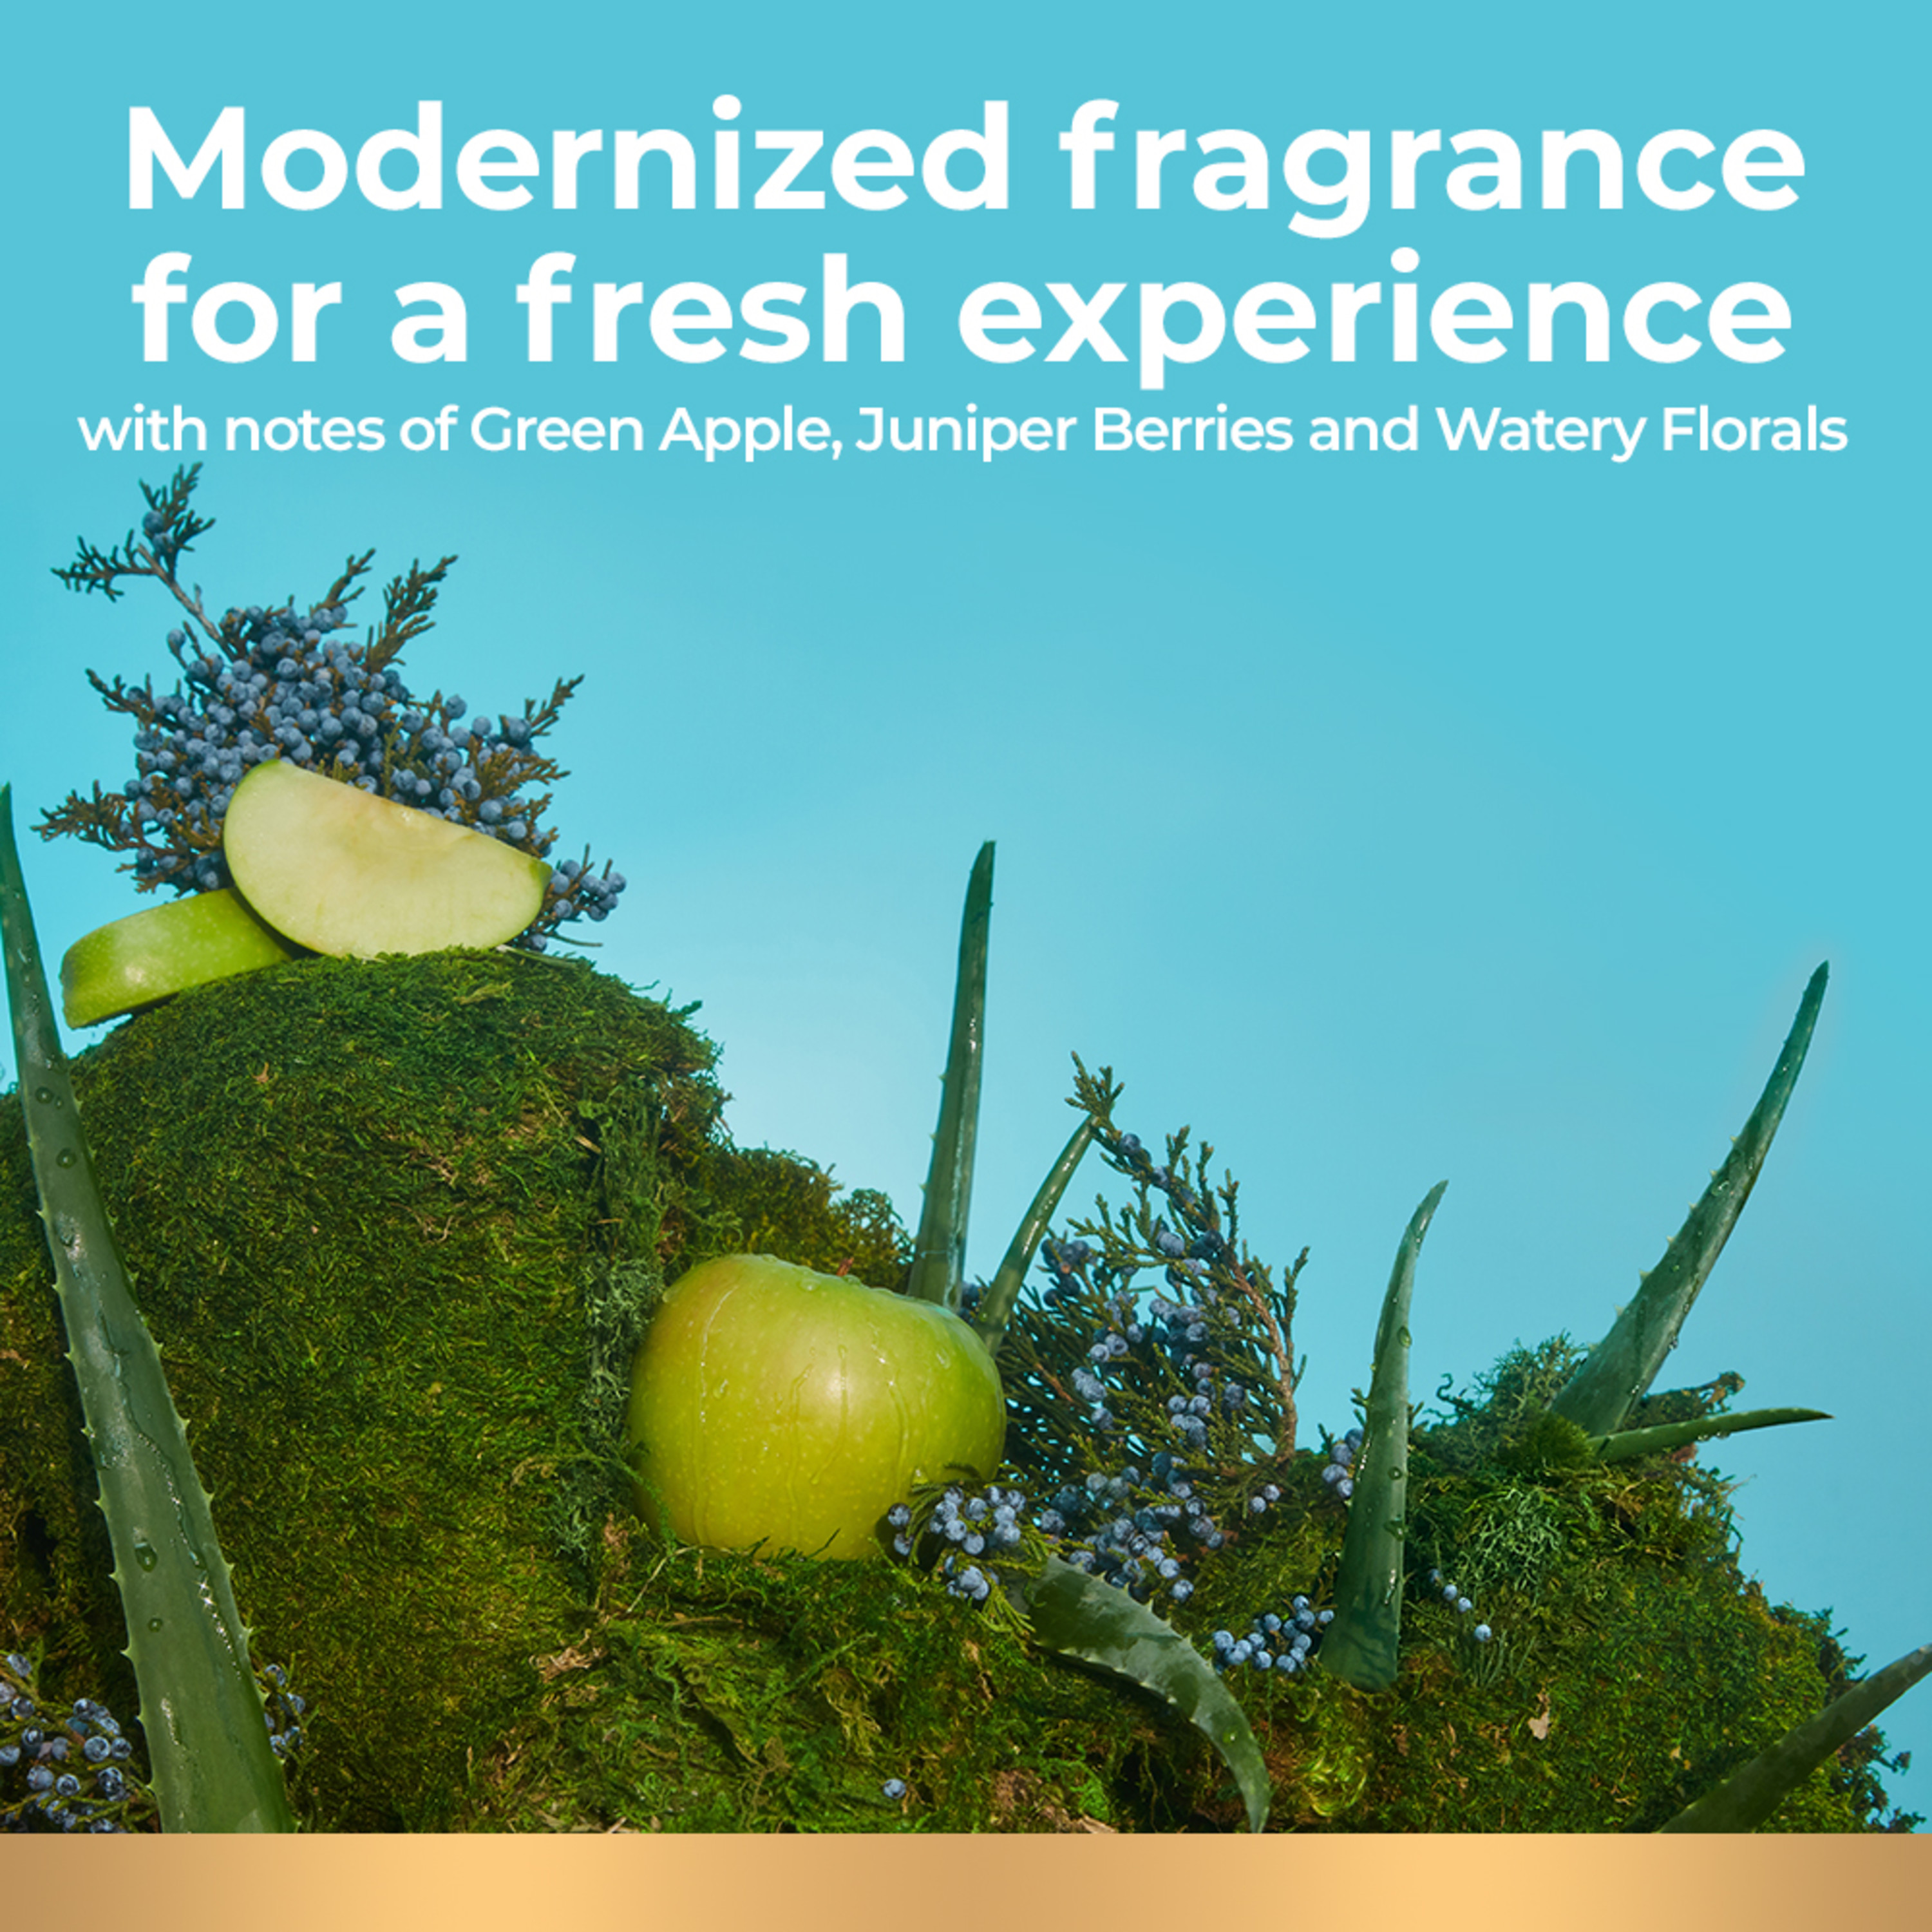 Irish Spring Aloe Mist Deodorant Bar Soap for Men, Feel Fresh All Day, 3.7 oz, 12 Pack - image 6 of 23